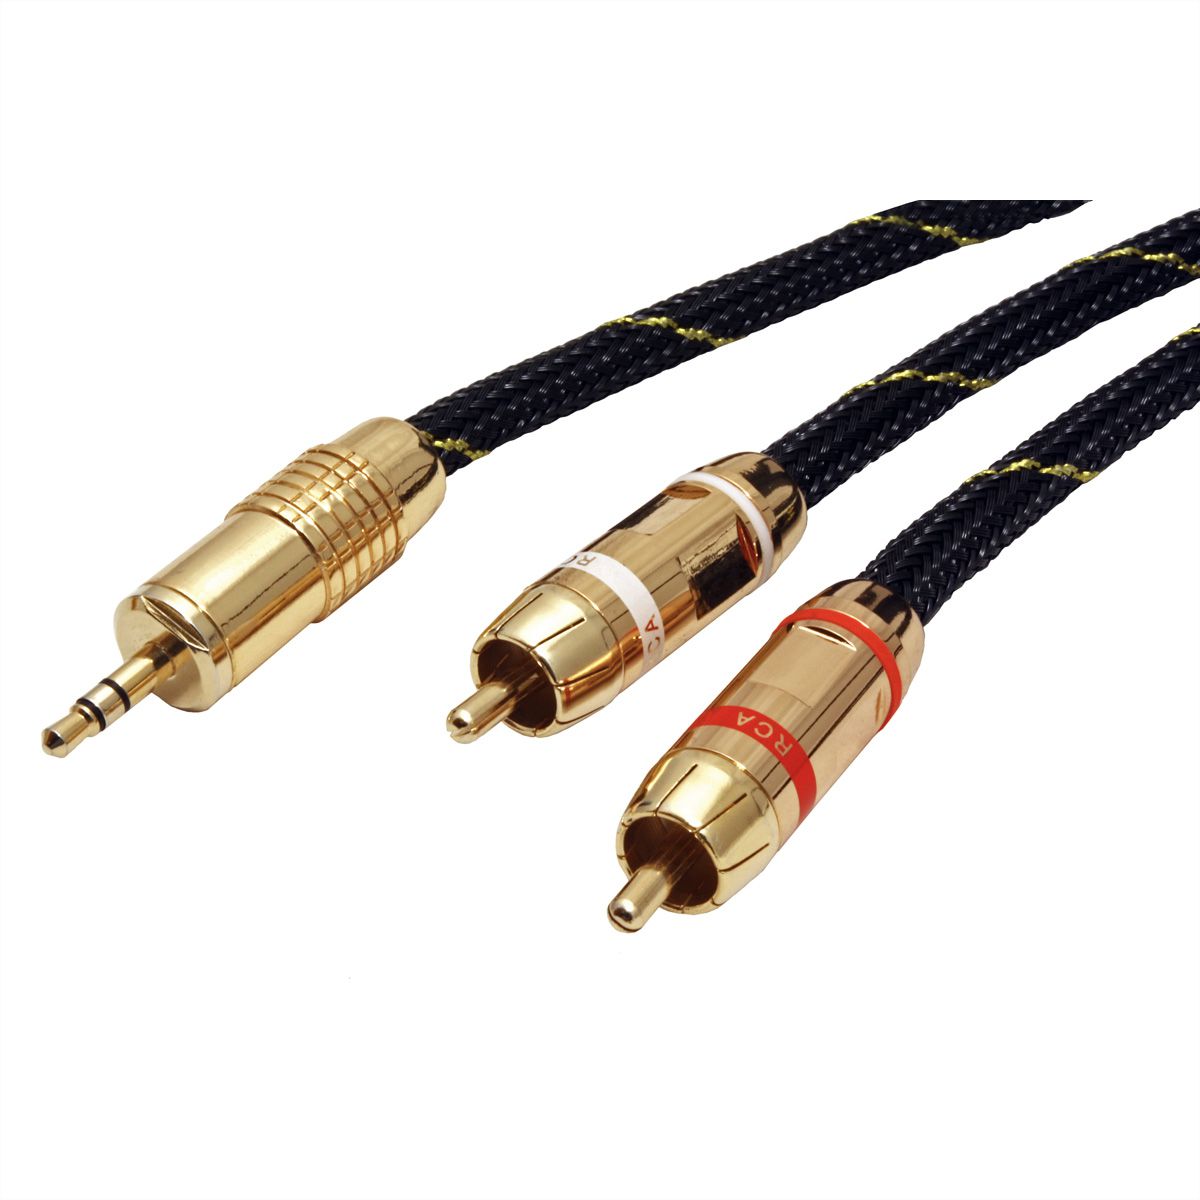 3 m 2 m 1 m Pro Audio Métal 2 X RCA Phono Plugs Vers Plugs Cable Lead GOLD UK Vendeur 